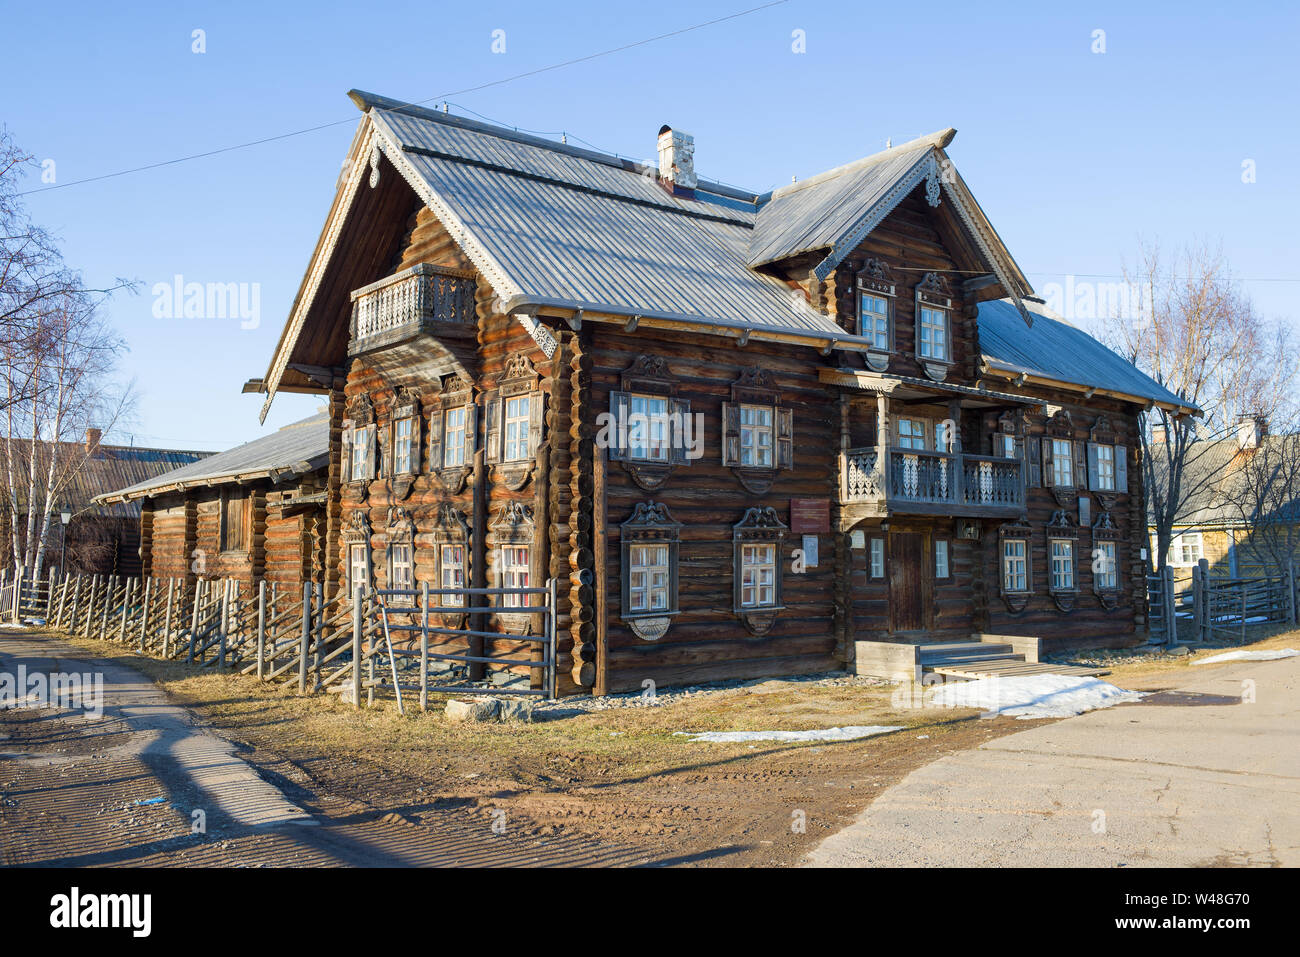 SHELTOZERO, Russland - April 06, 2019: Alte Holzhaus Der sheltozero Veps ethnographische Museum auf einem April Nachmittag Stockfoto